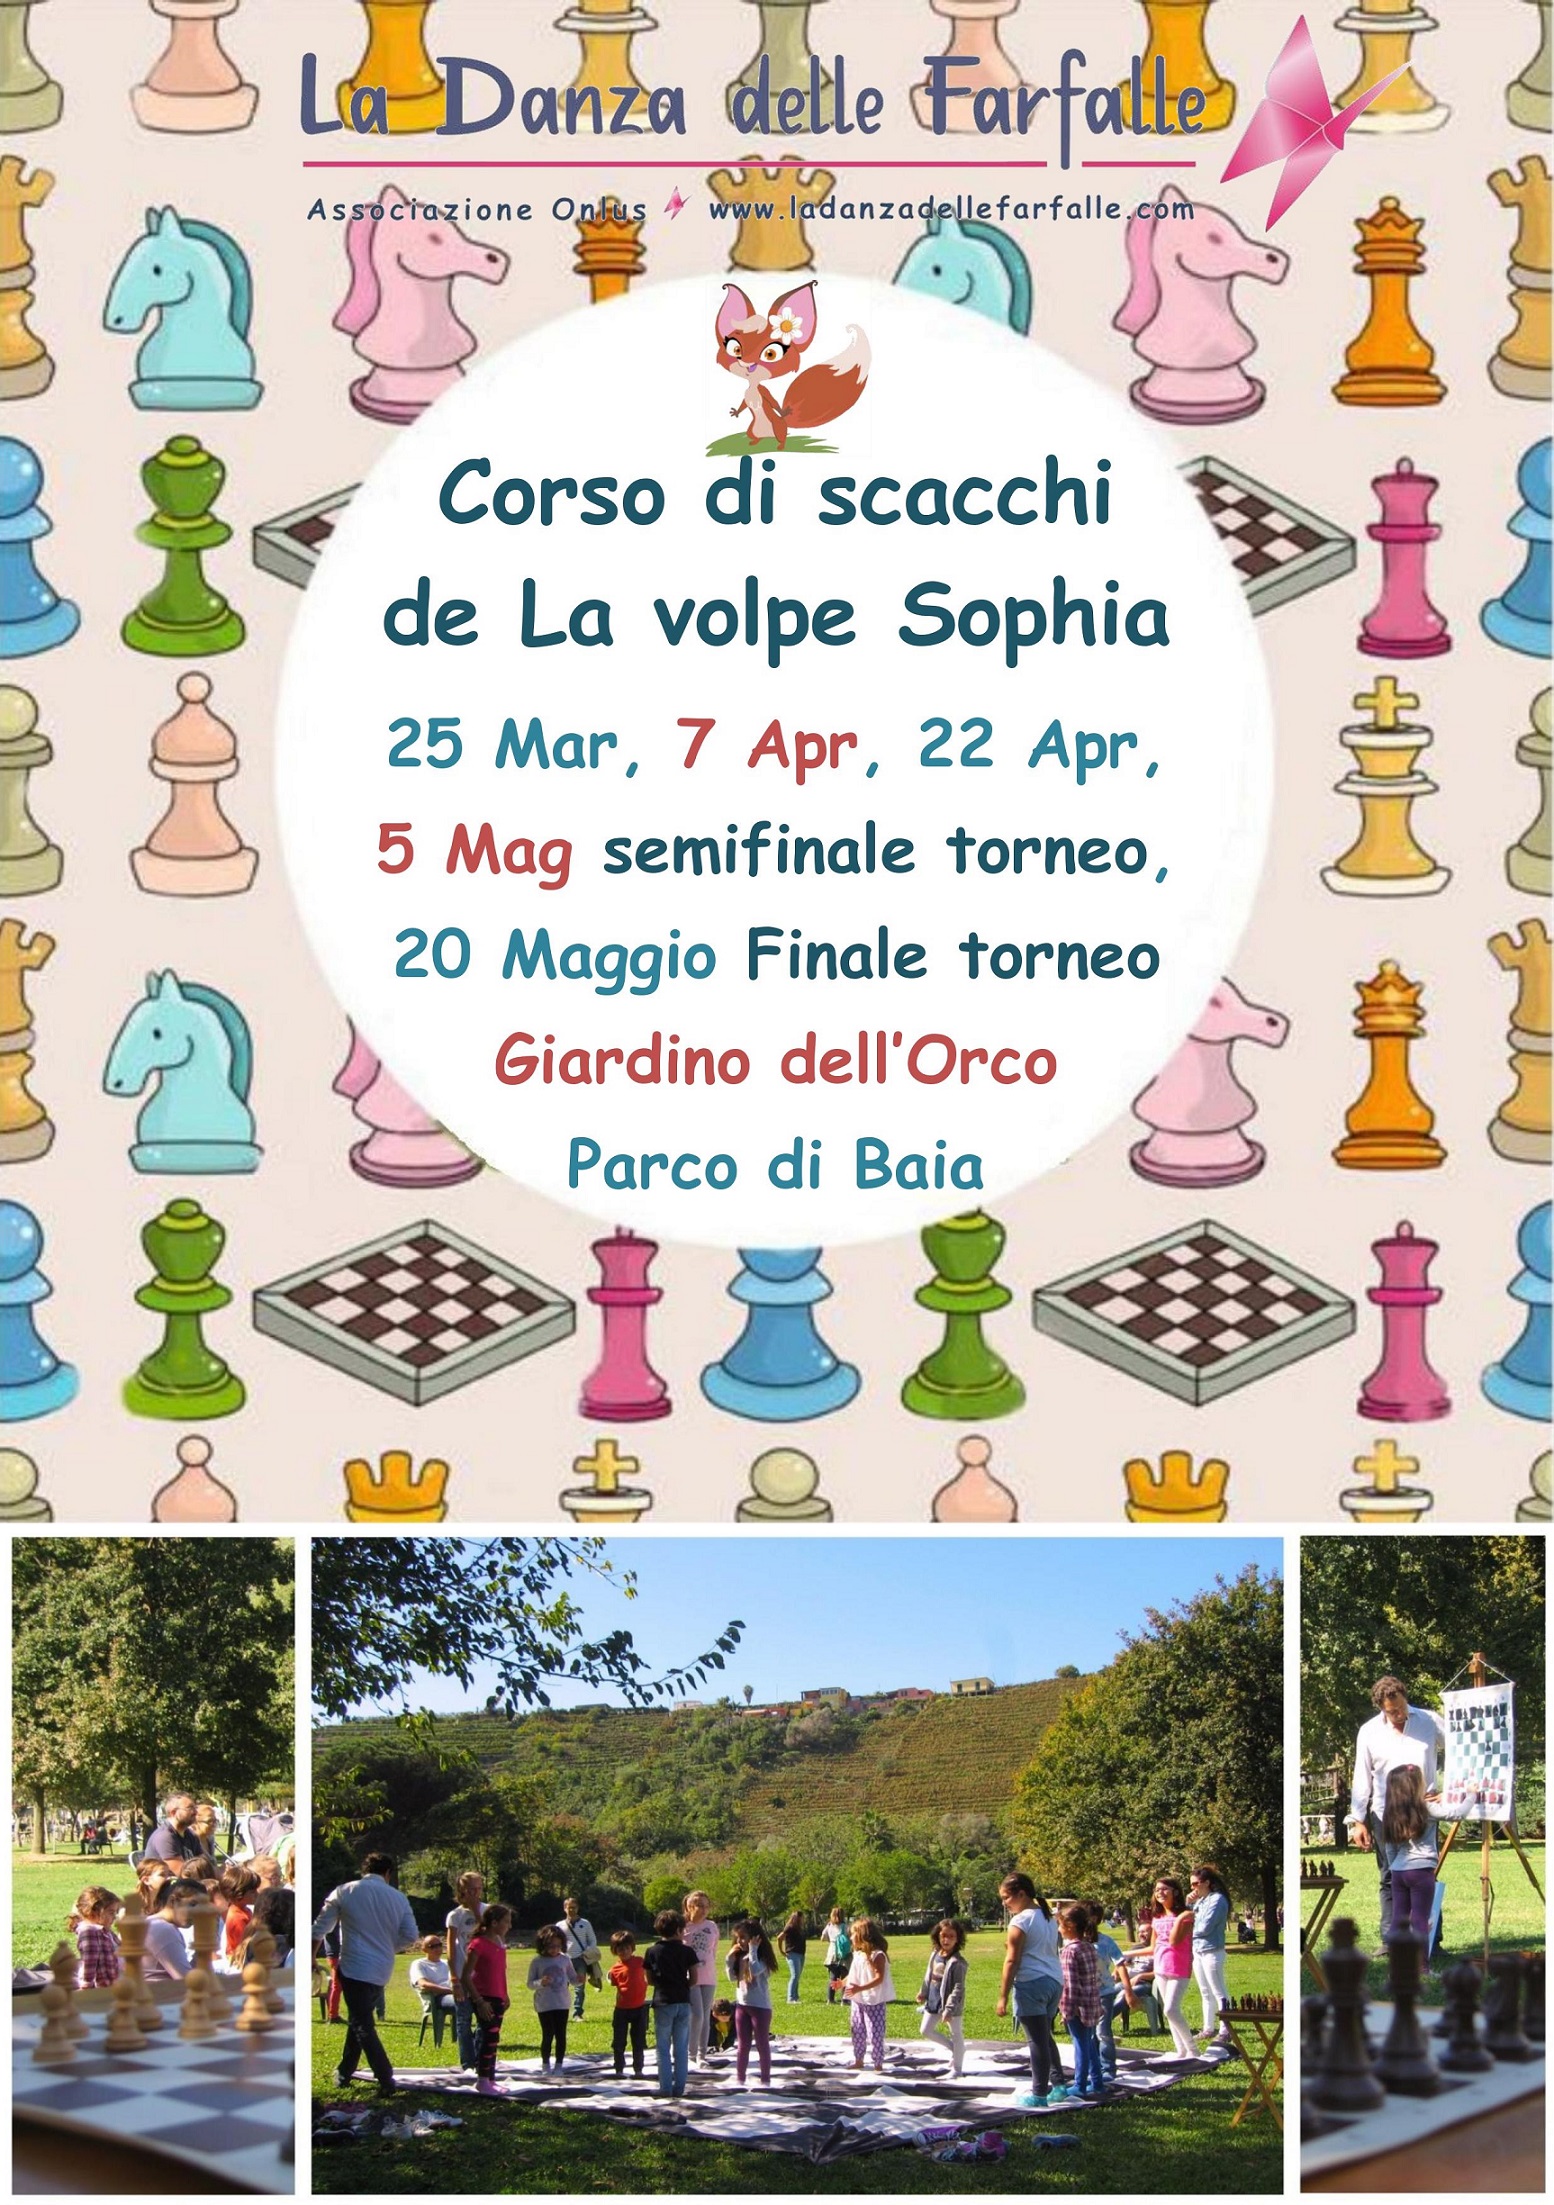 Corso di scacchi La volpe Sophia Parco di Baia locandina 2018 aggiornata Marzo sito